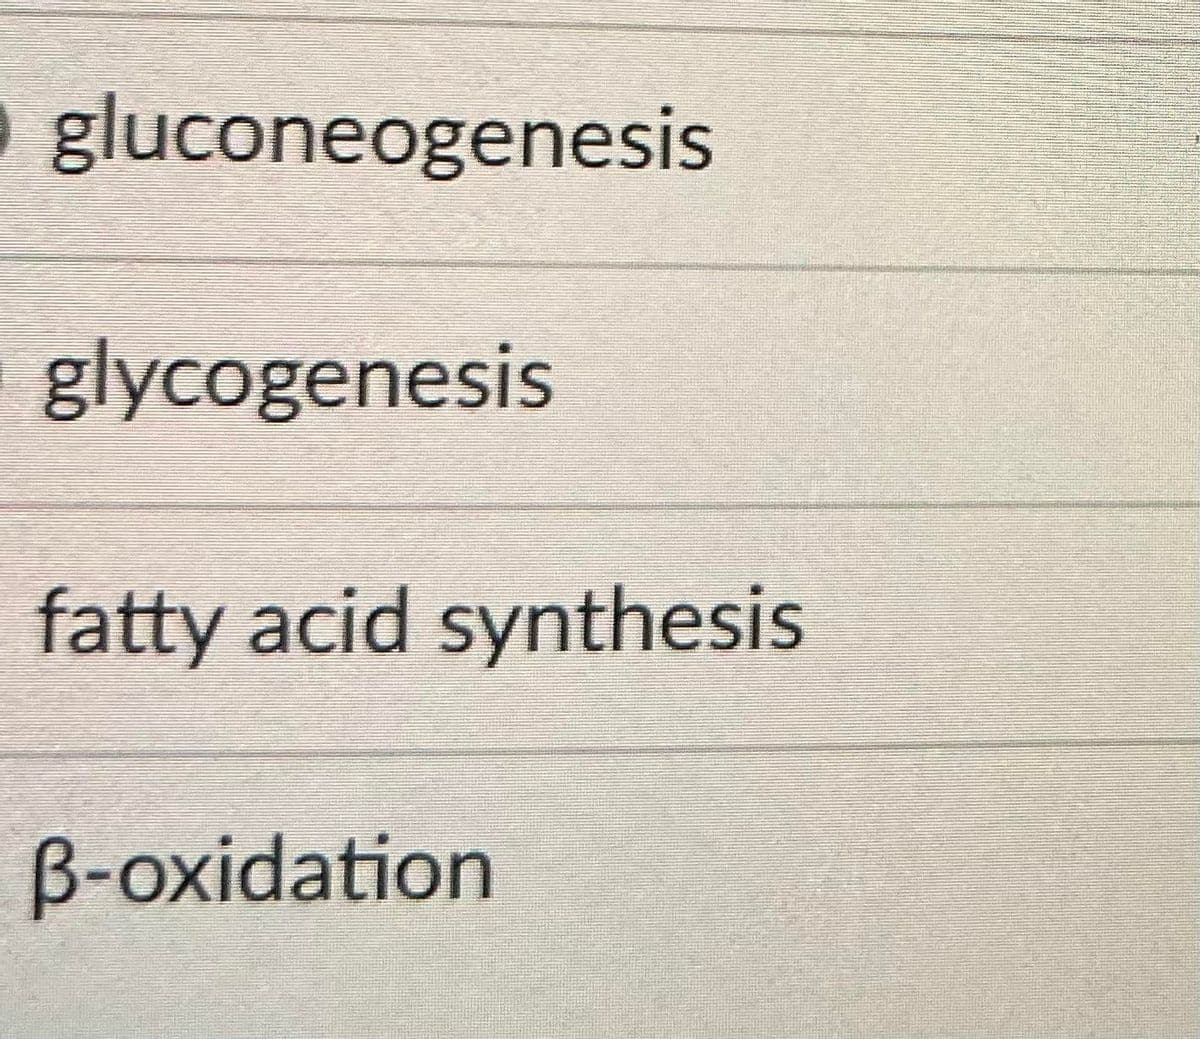 gluconeogenesis
glycogenesis
fatty acid synthesis
B-oxidation
